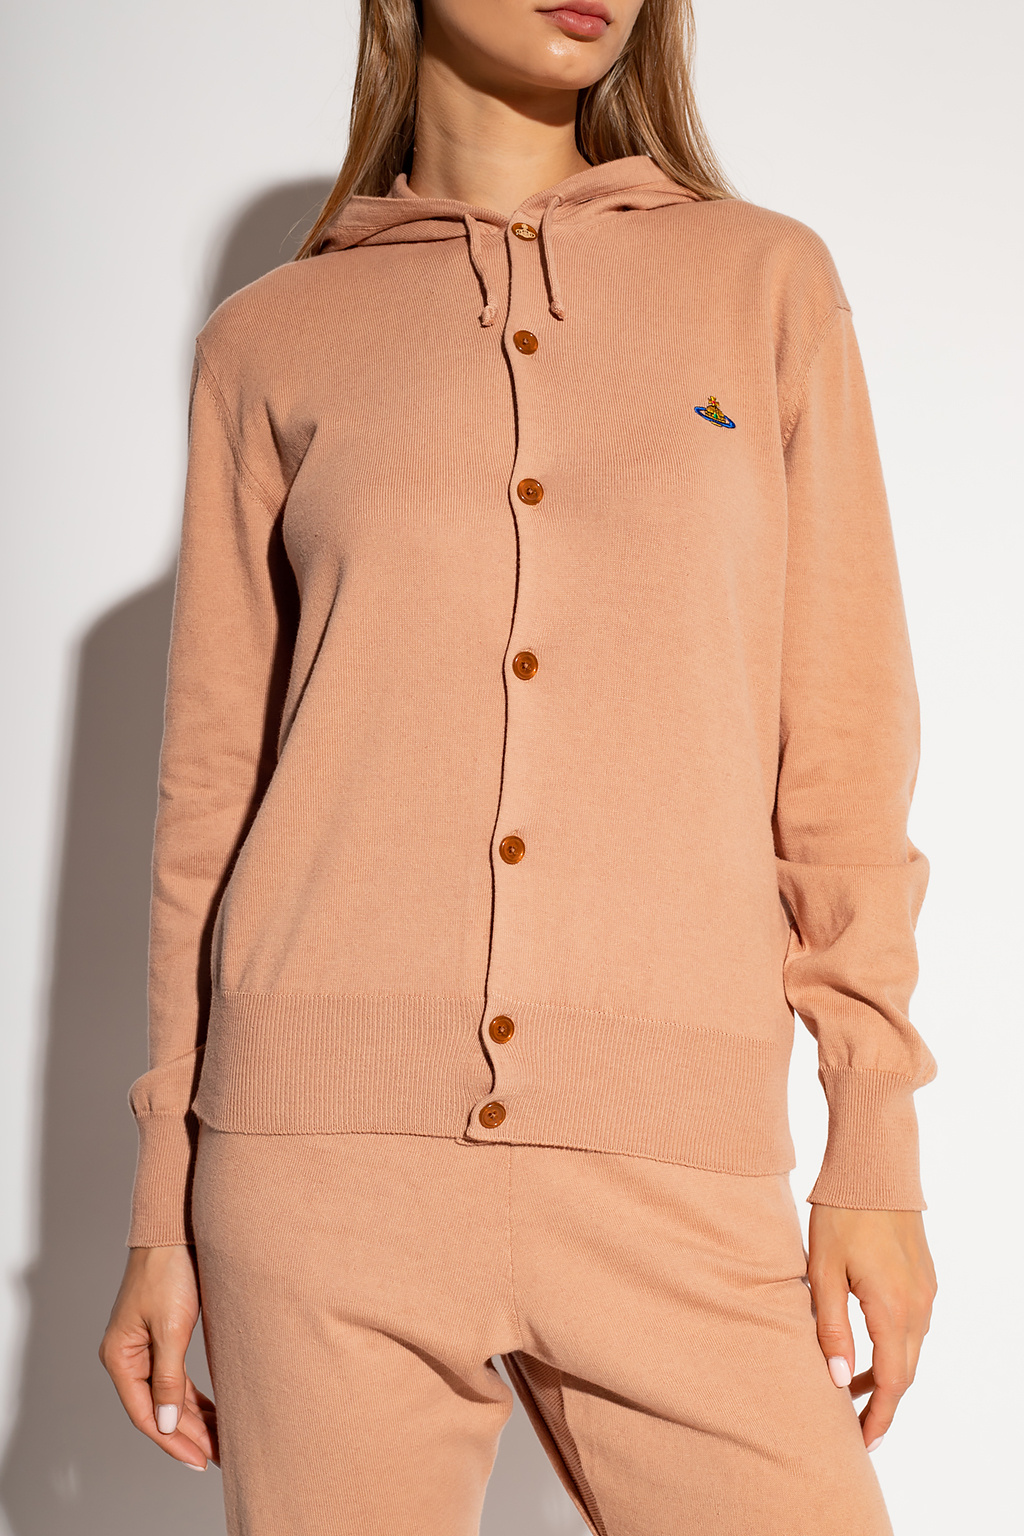 Vivienne Westwood Hooded sweater